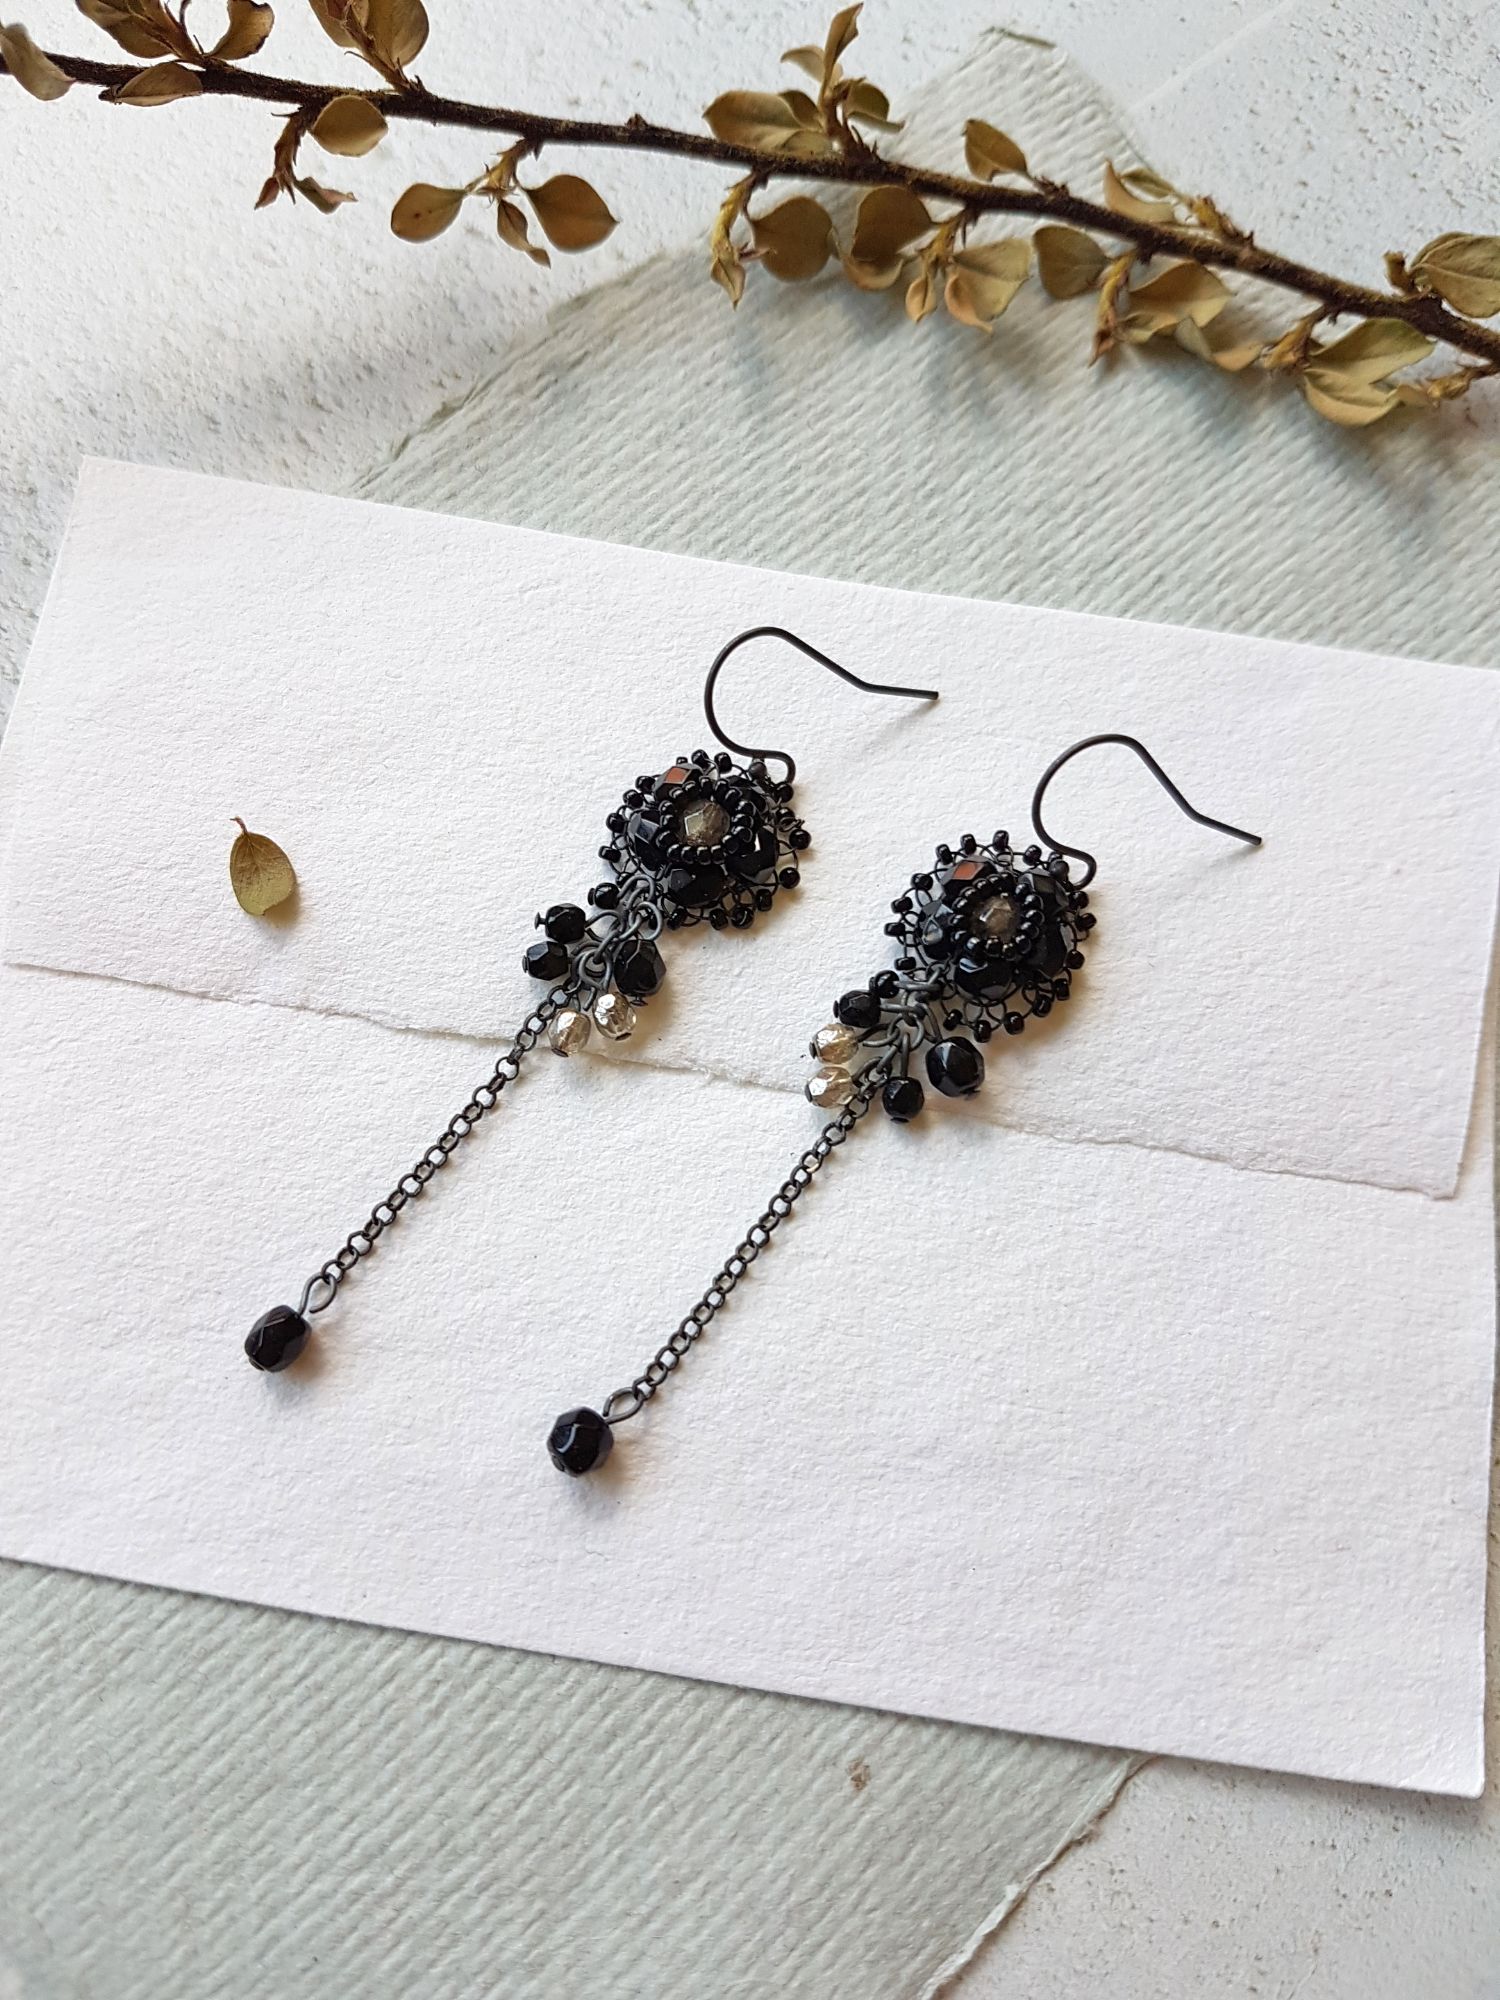 Cluster earrings by Judith Brown